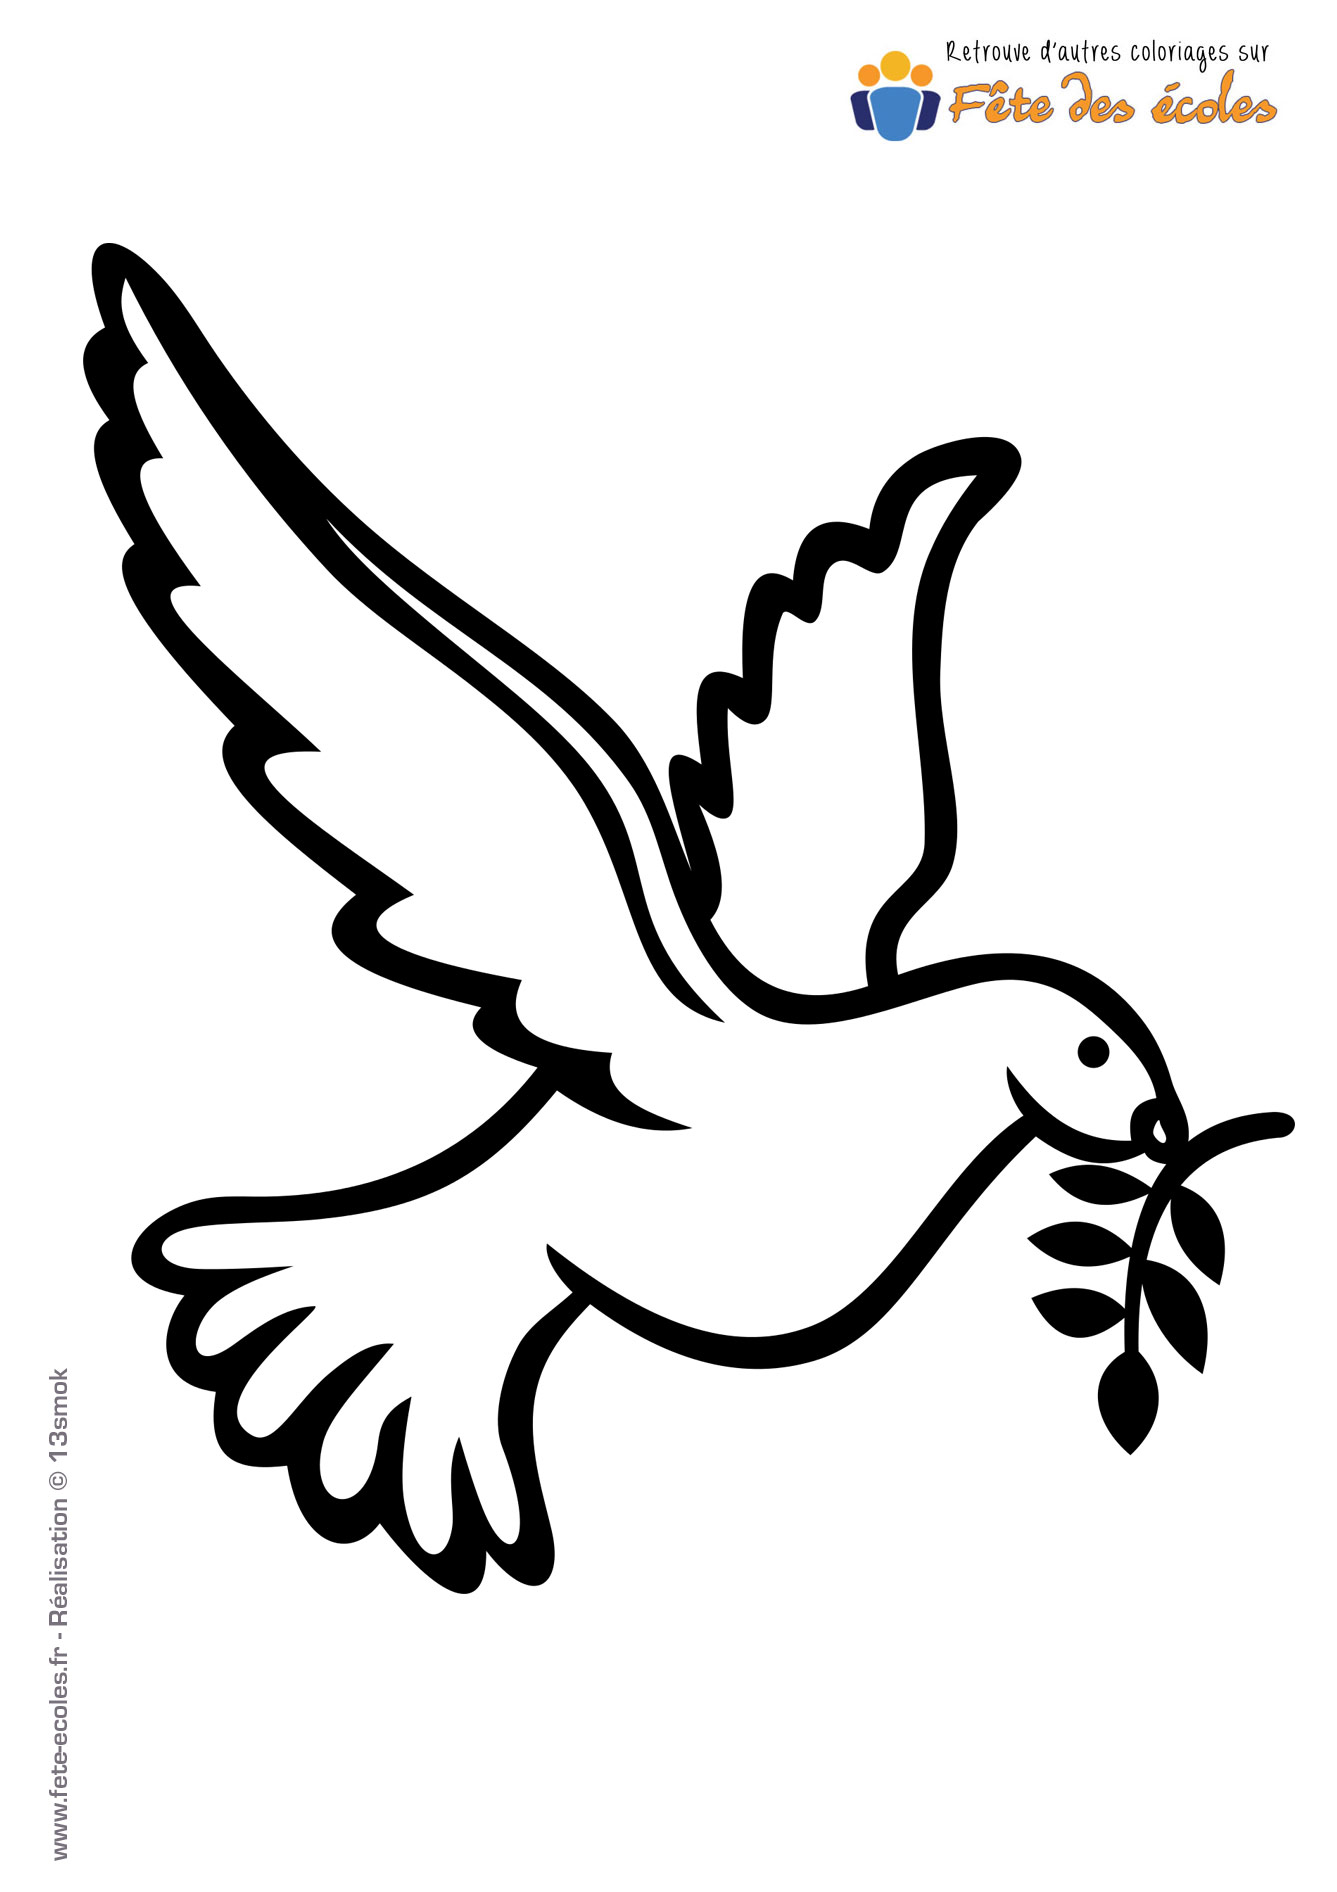 Coloriage d'une colombe dessinée par 13smok, dessinateur Polonais